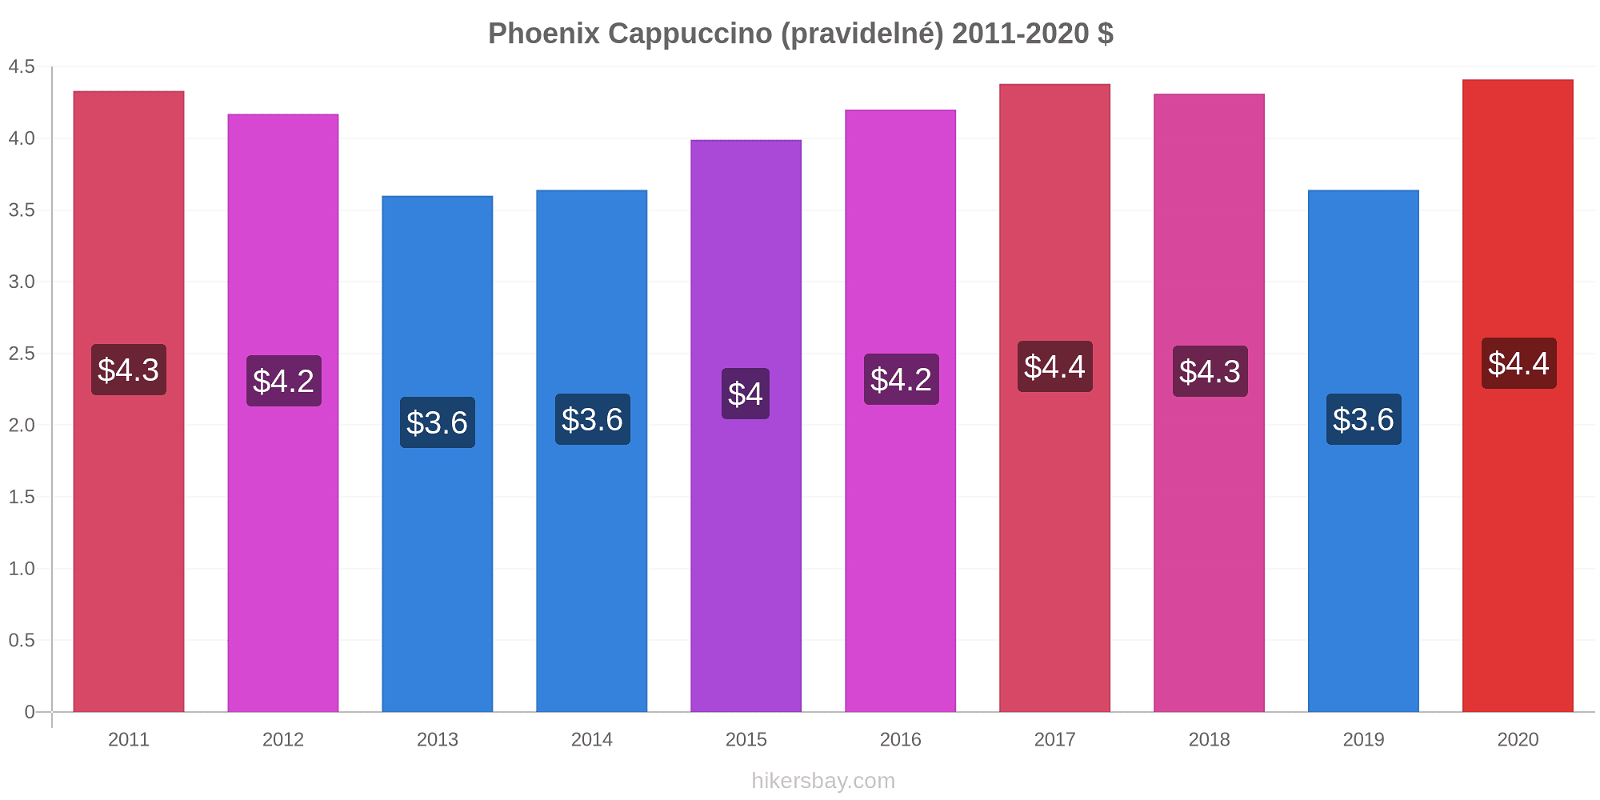 Phoenix změny cen Cappuccino (pravidelné) hikersbay.com